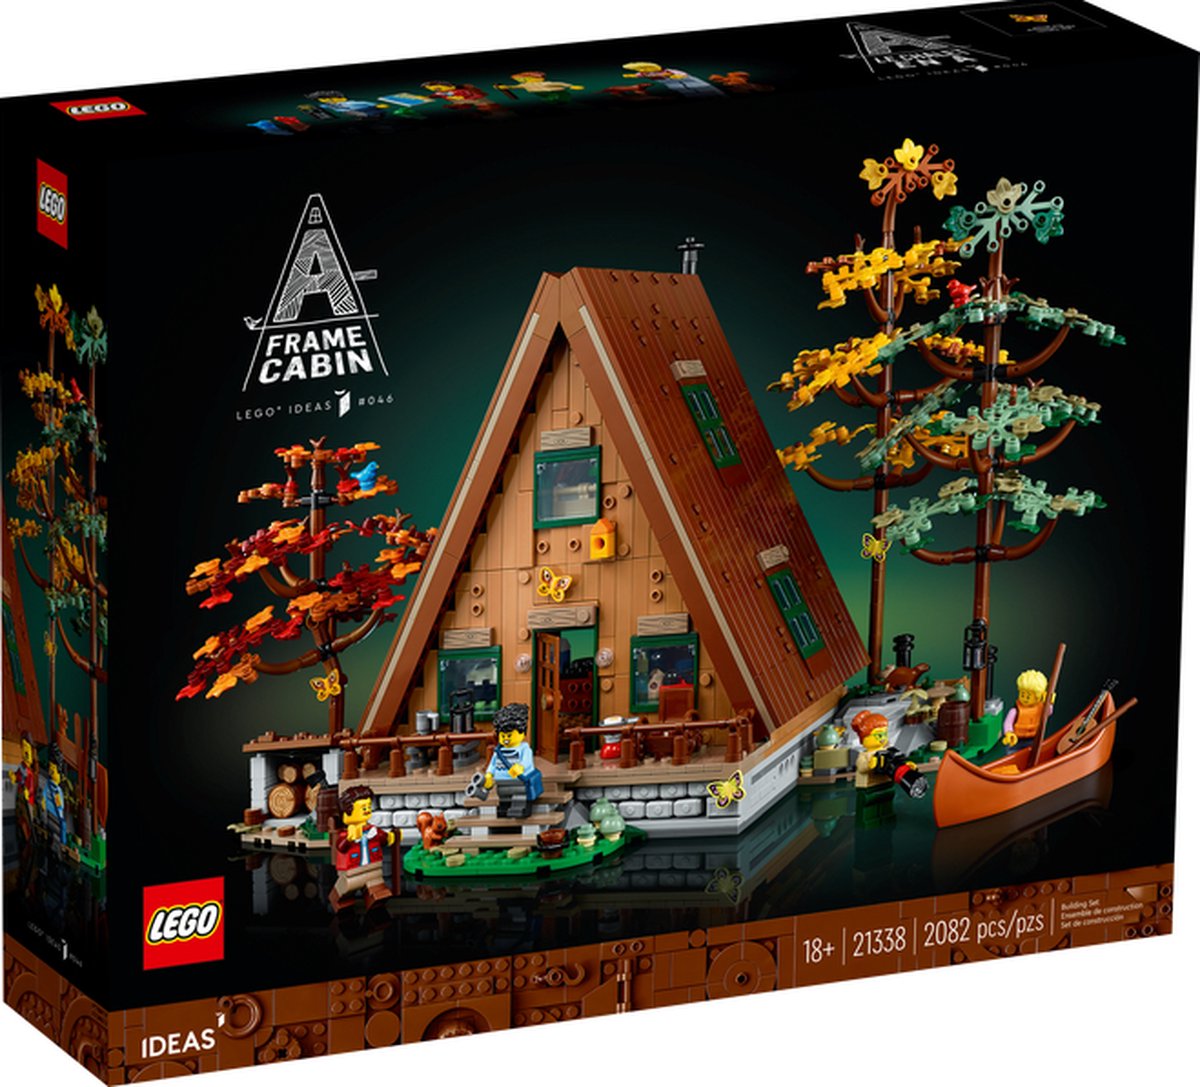 Lego - A-frame boshut (21338) - LEGO 21338 A-Frame Cabin